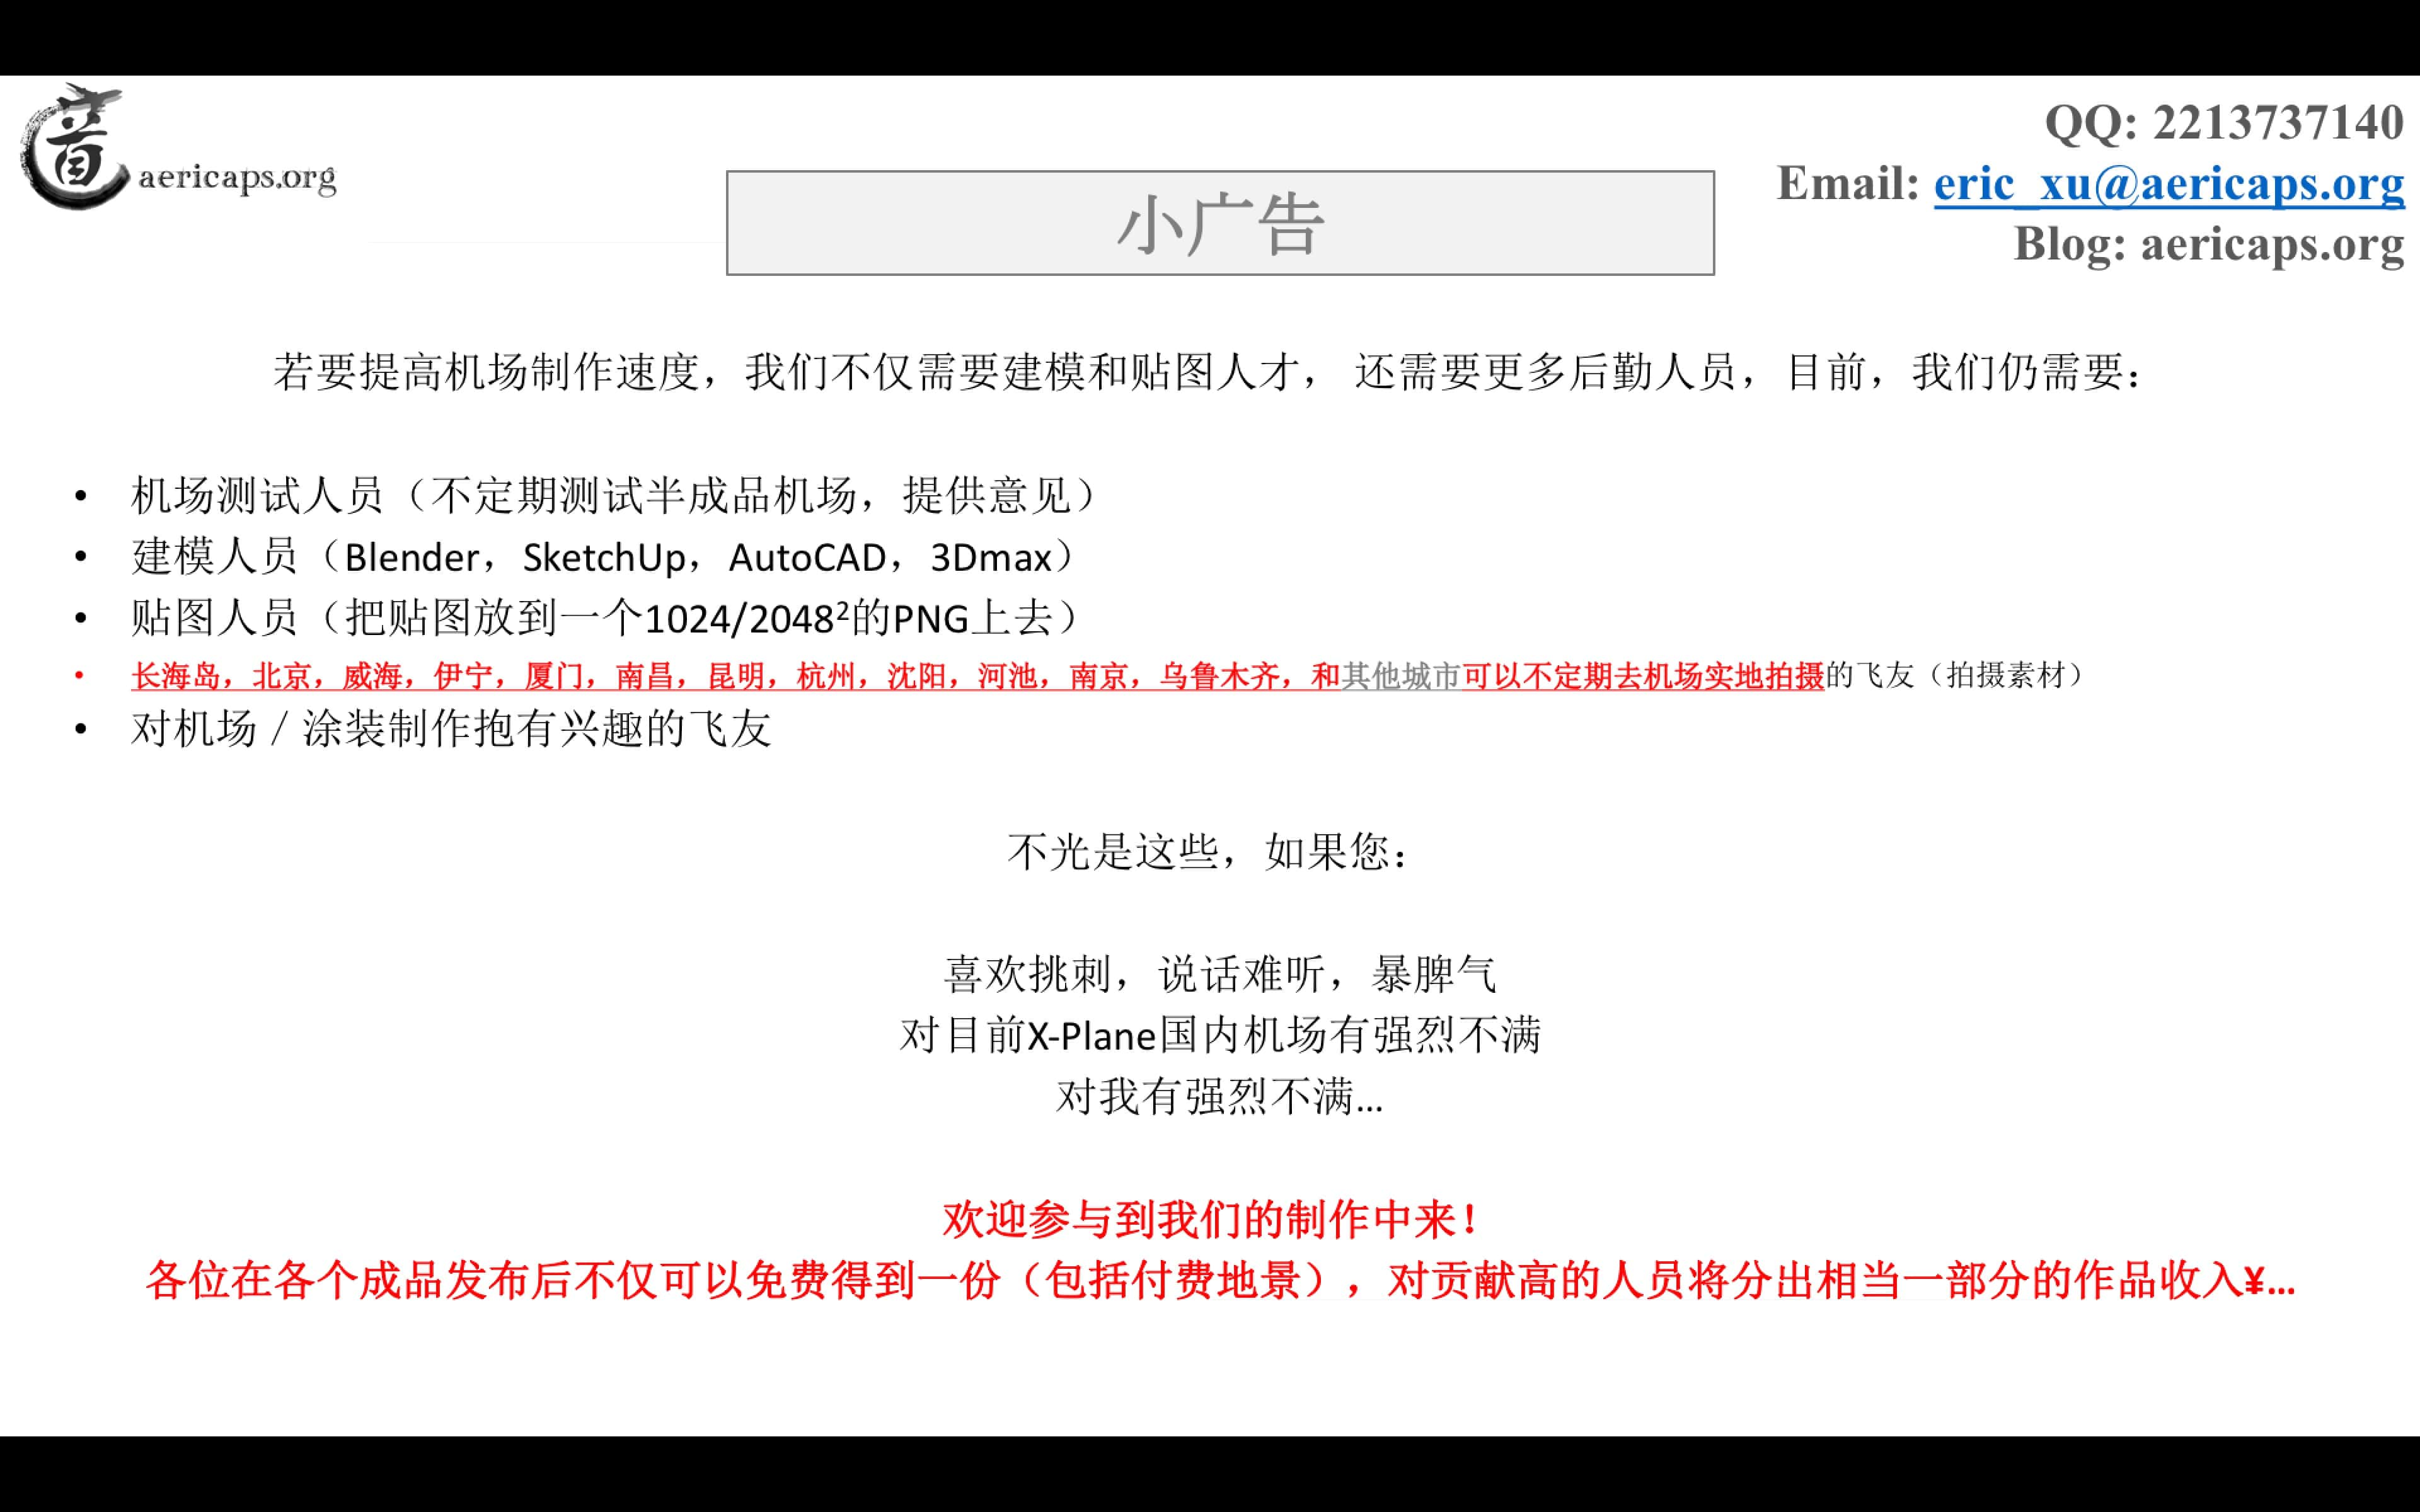 【预告】北京南苑机场地景宣传册-最终版-3729 